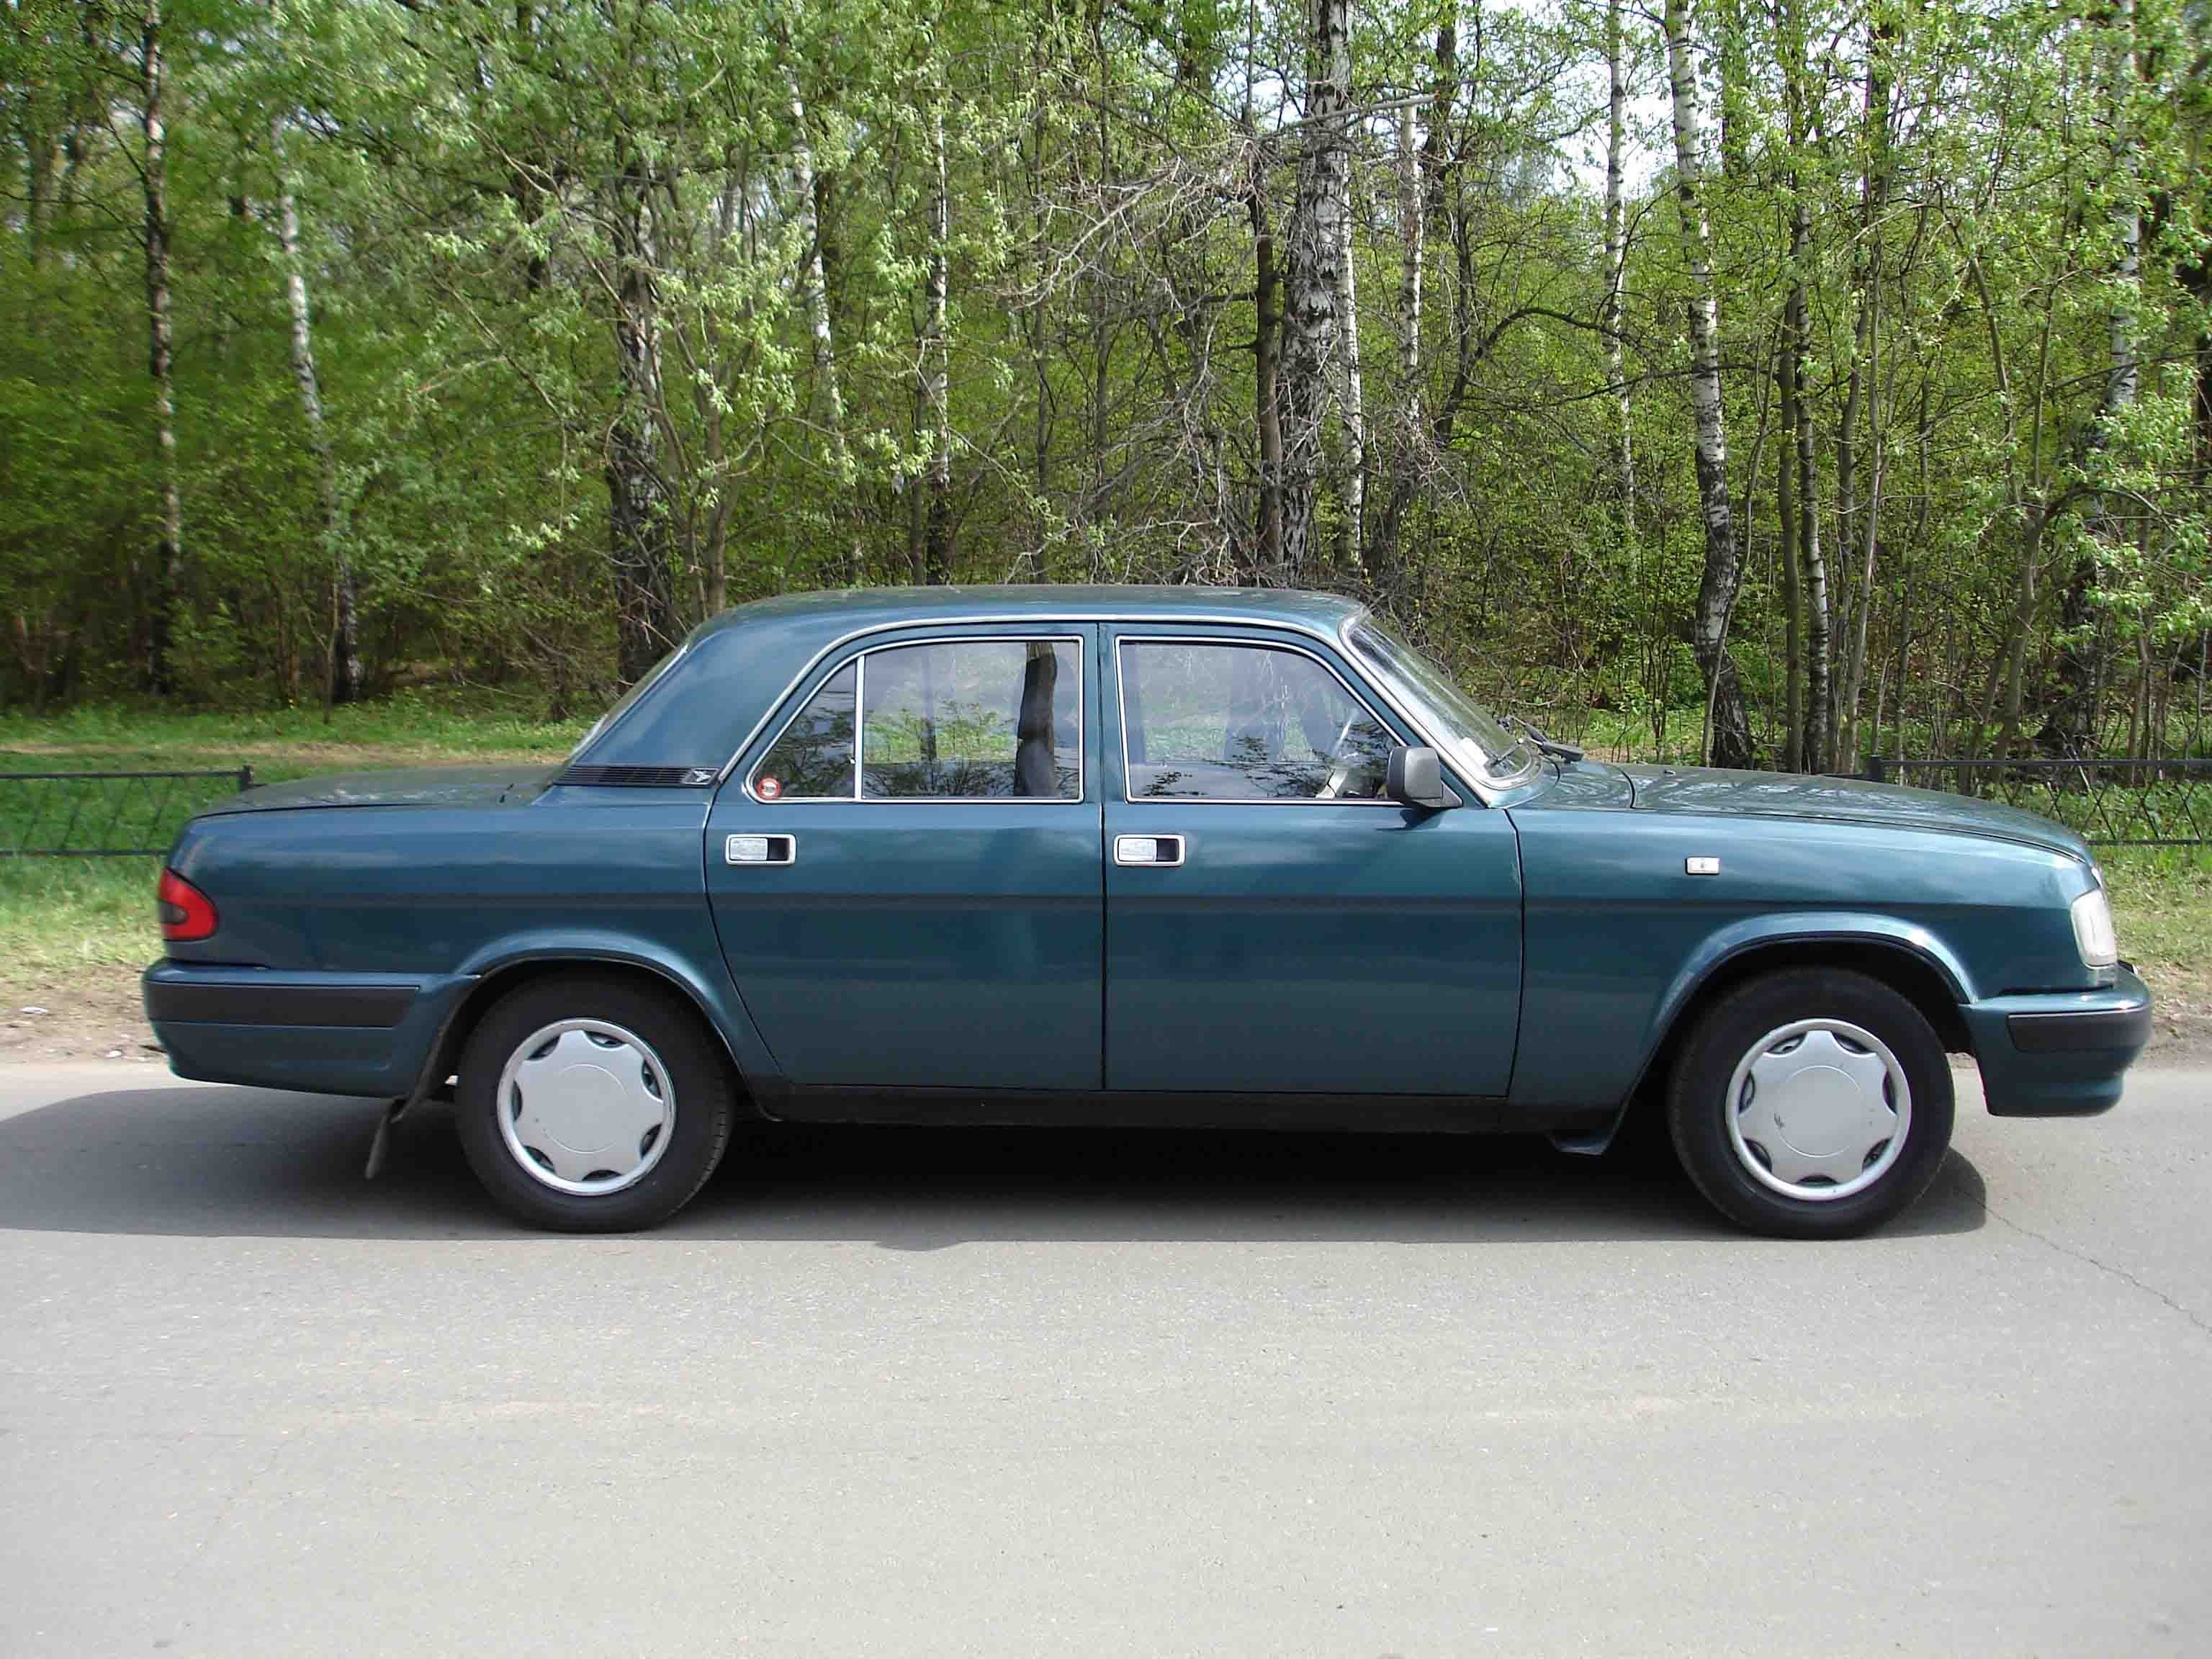 2000 GAZ 3110